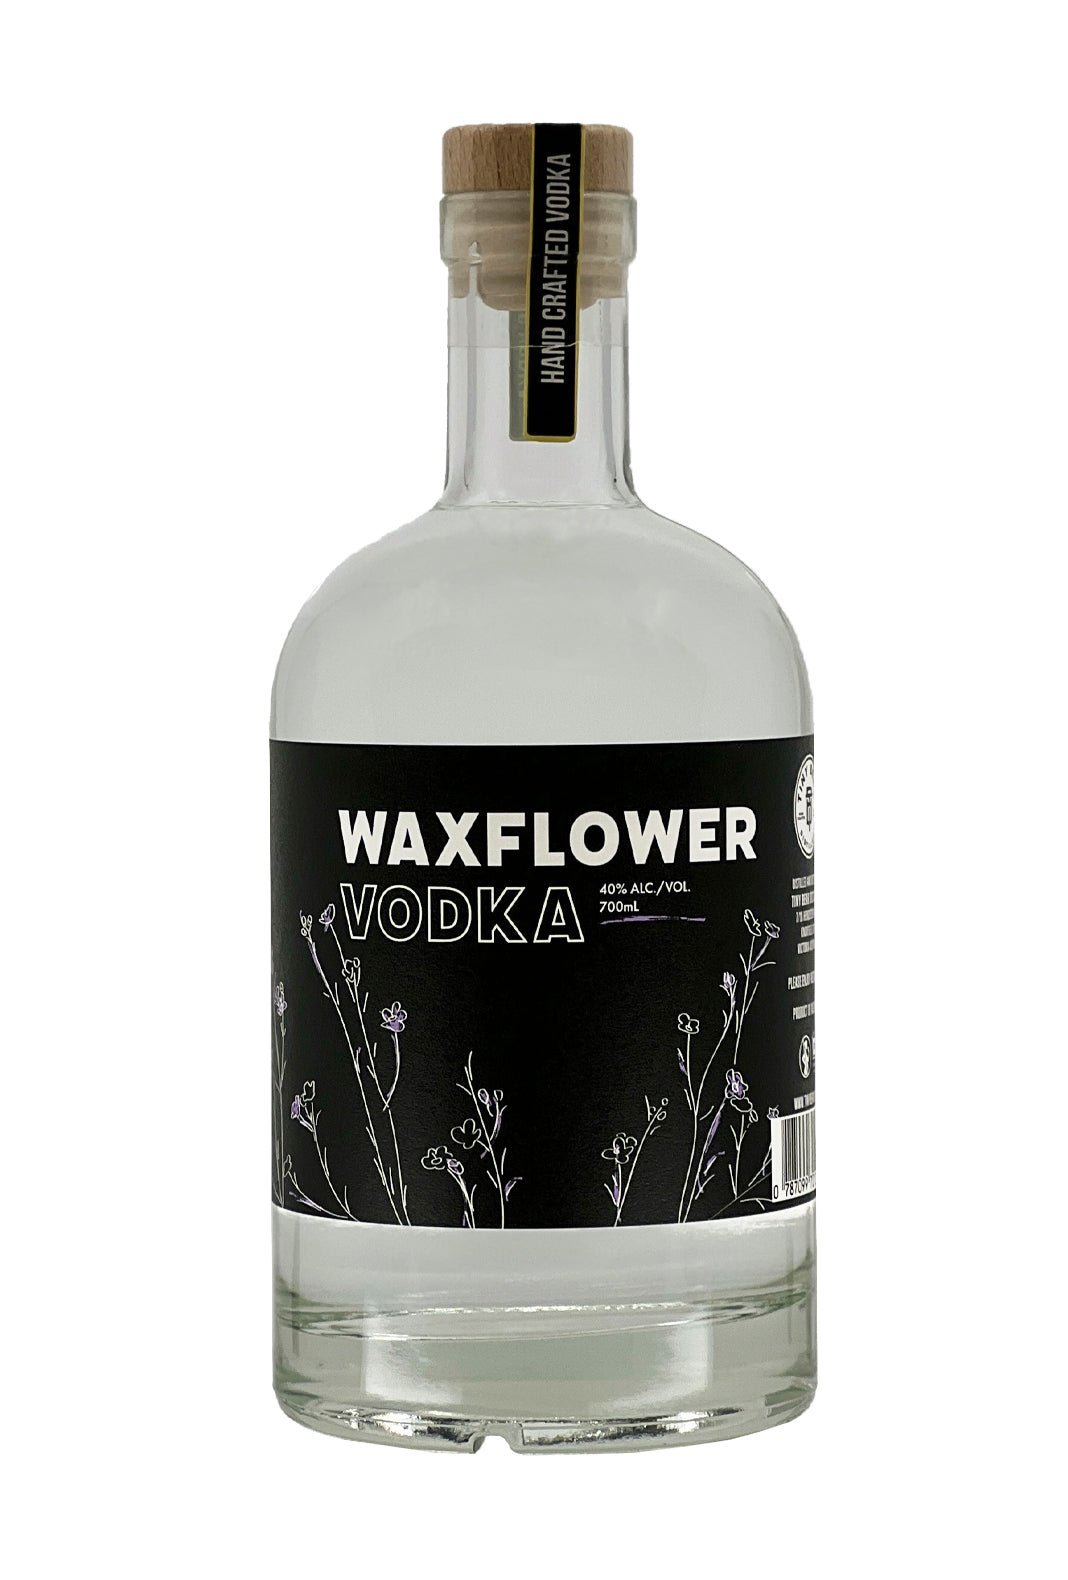 Tiny Bear Waxflower Vodka 40% 700ml | Vodka | Shop online at Spirits of France